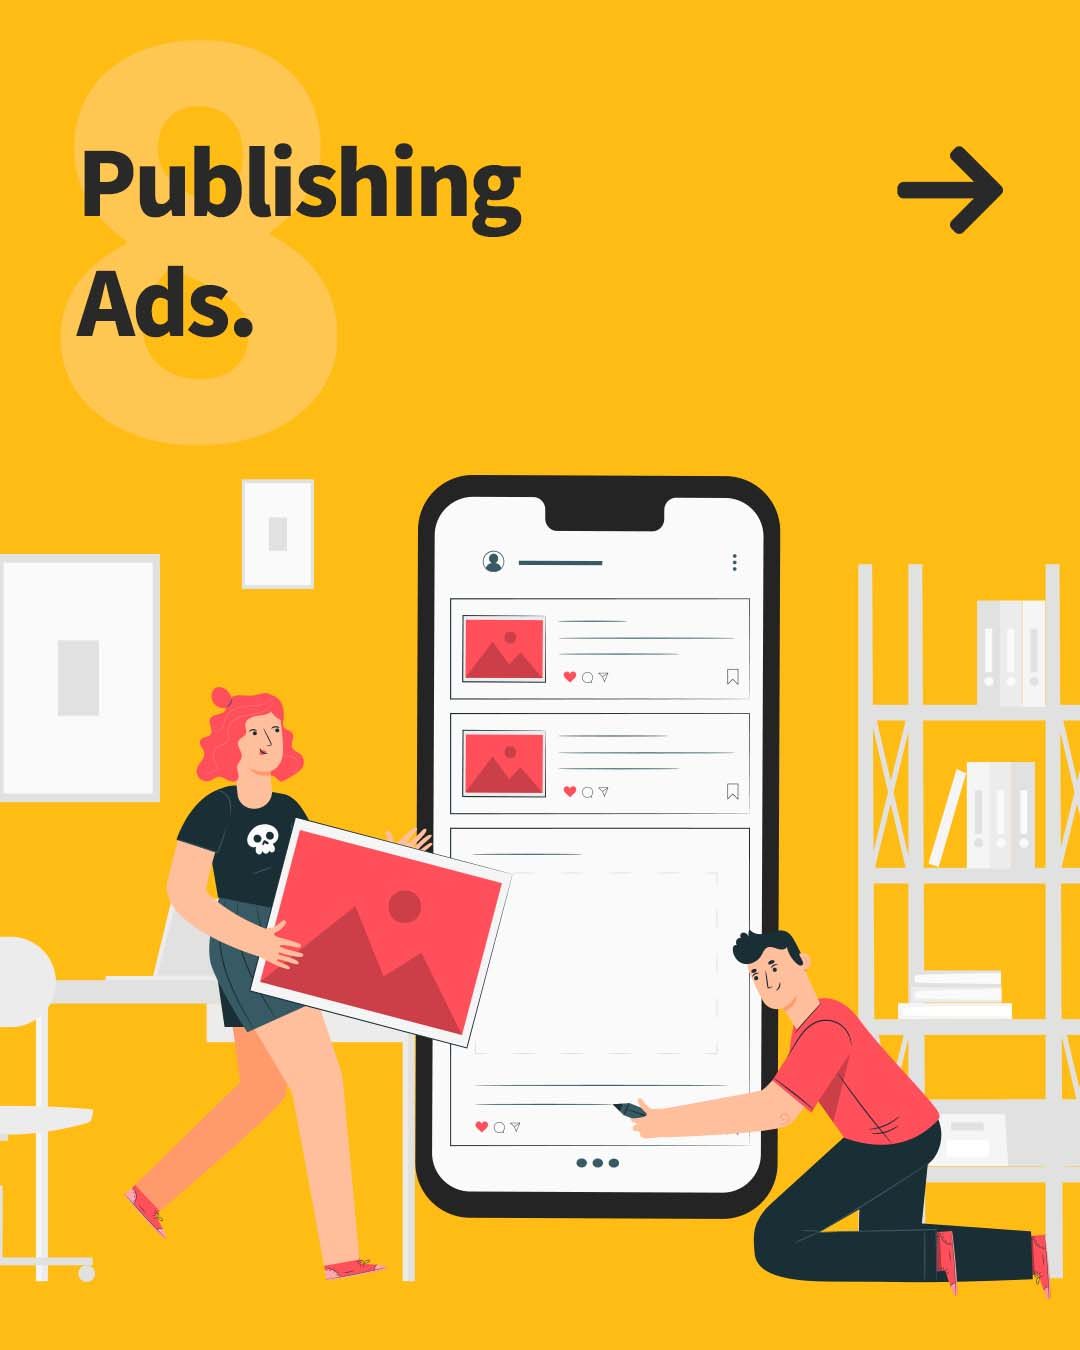 Publishing ads